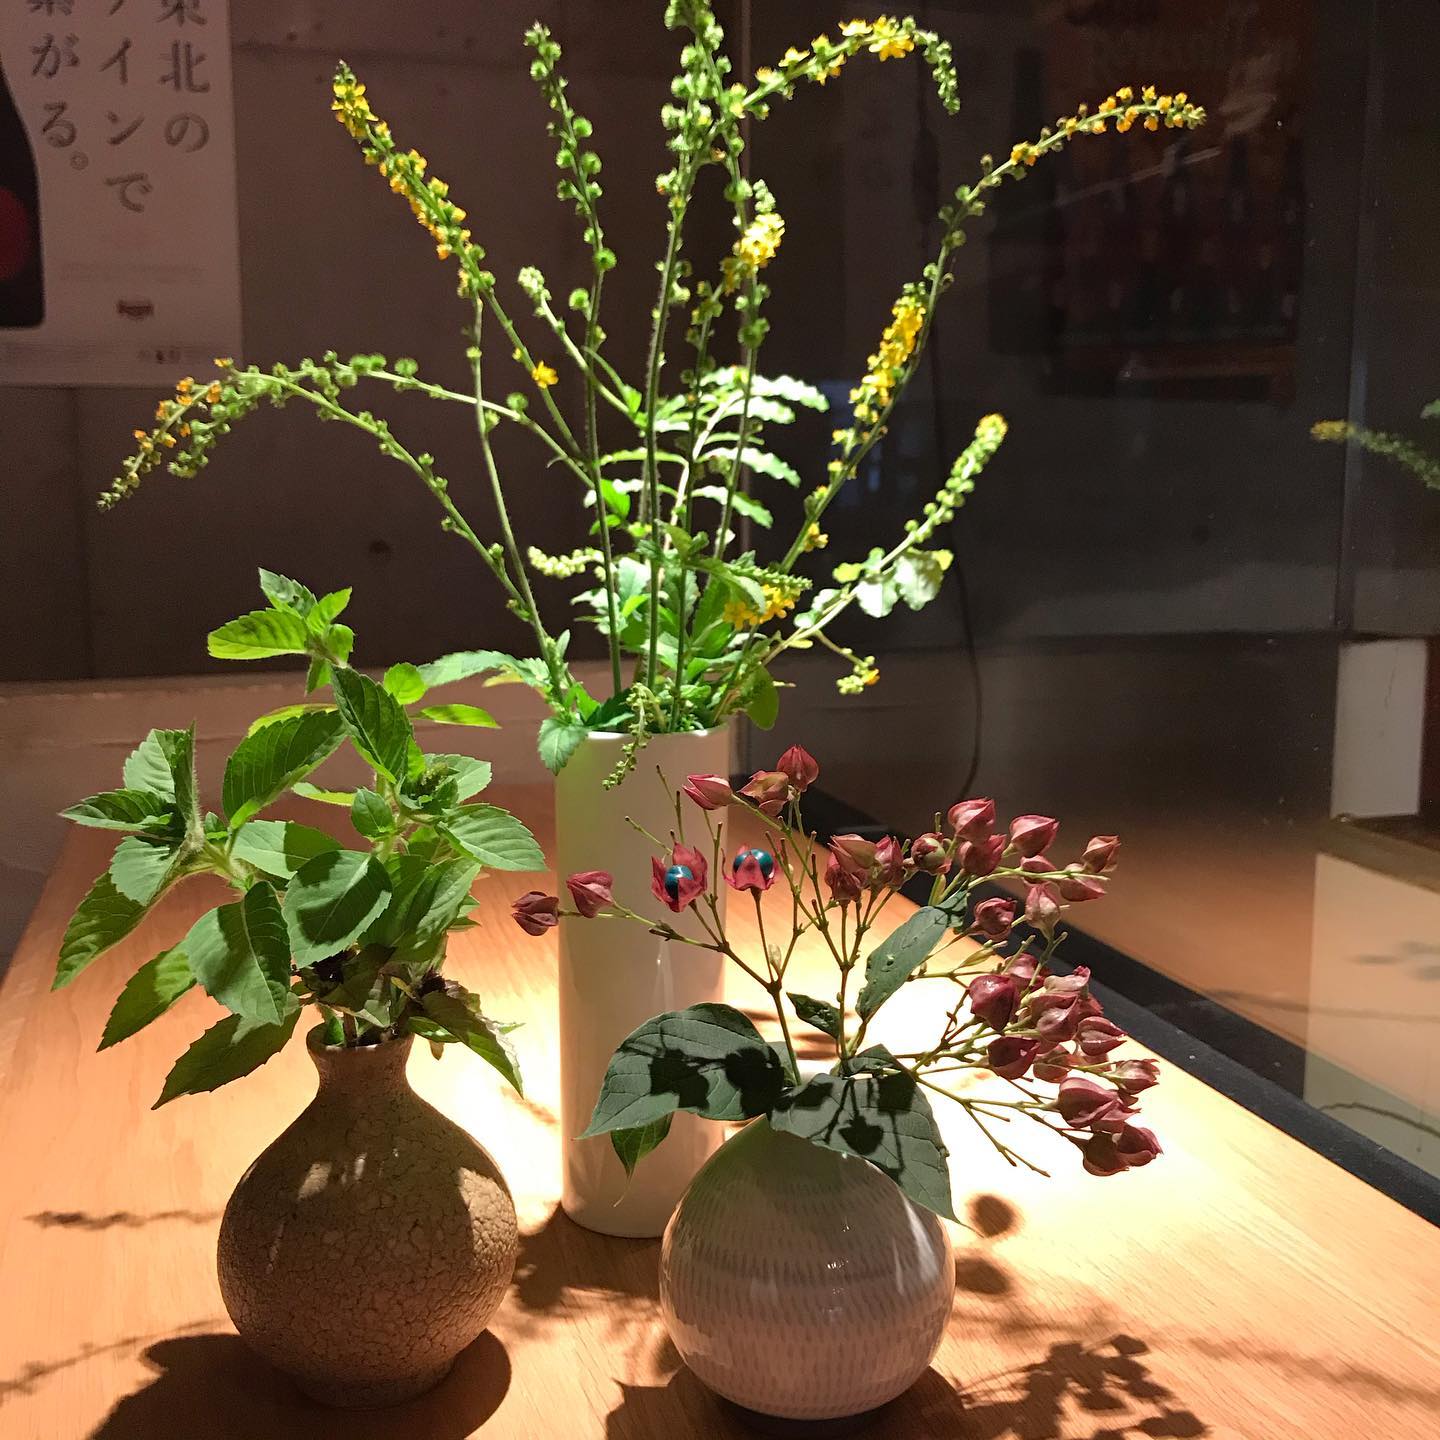 畑の傍に咲いてる草も、花器に生けてあげてば輝きますね〜本日9/15も17時より営業してます。よろしくお願いします。#イルフェソワフ #ワイン#日本酒 #薬院#警固